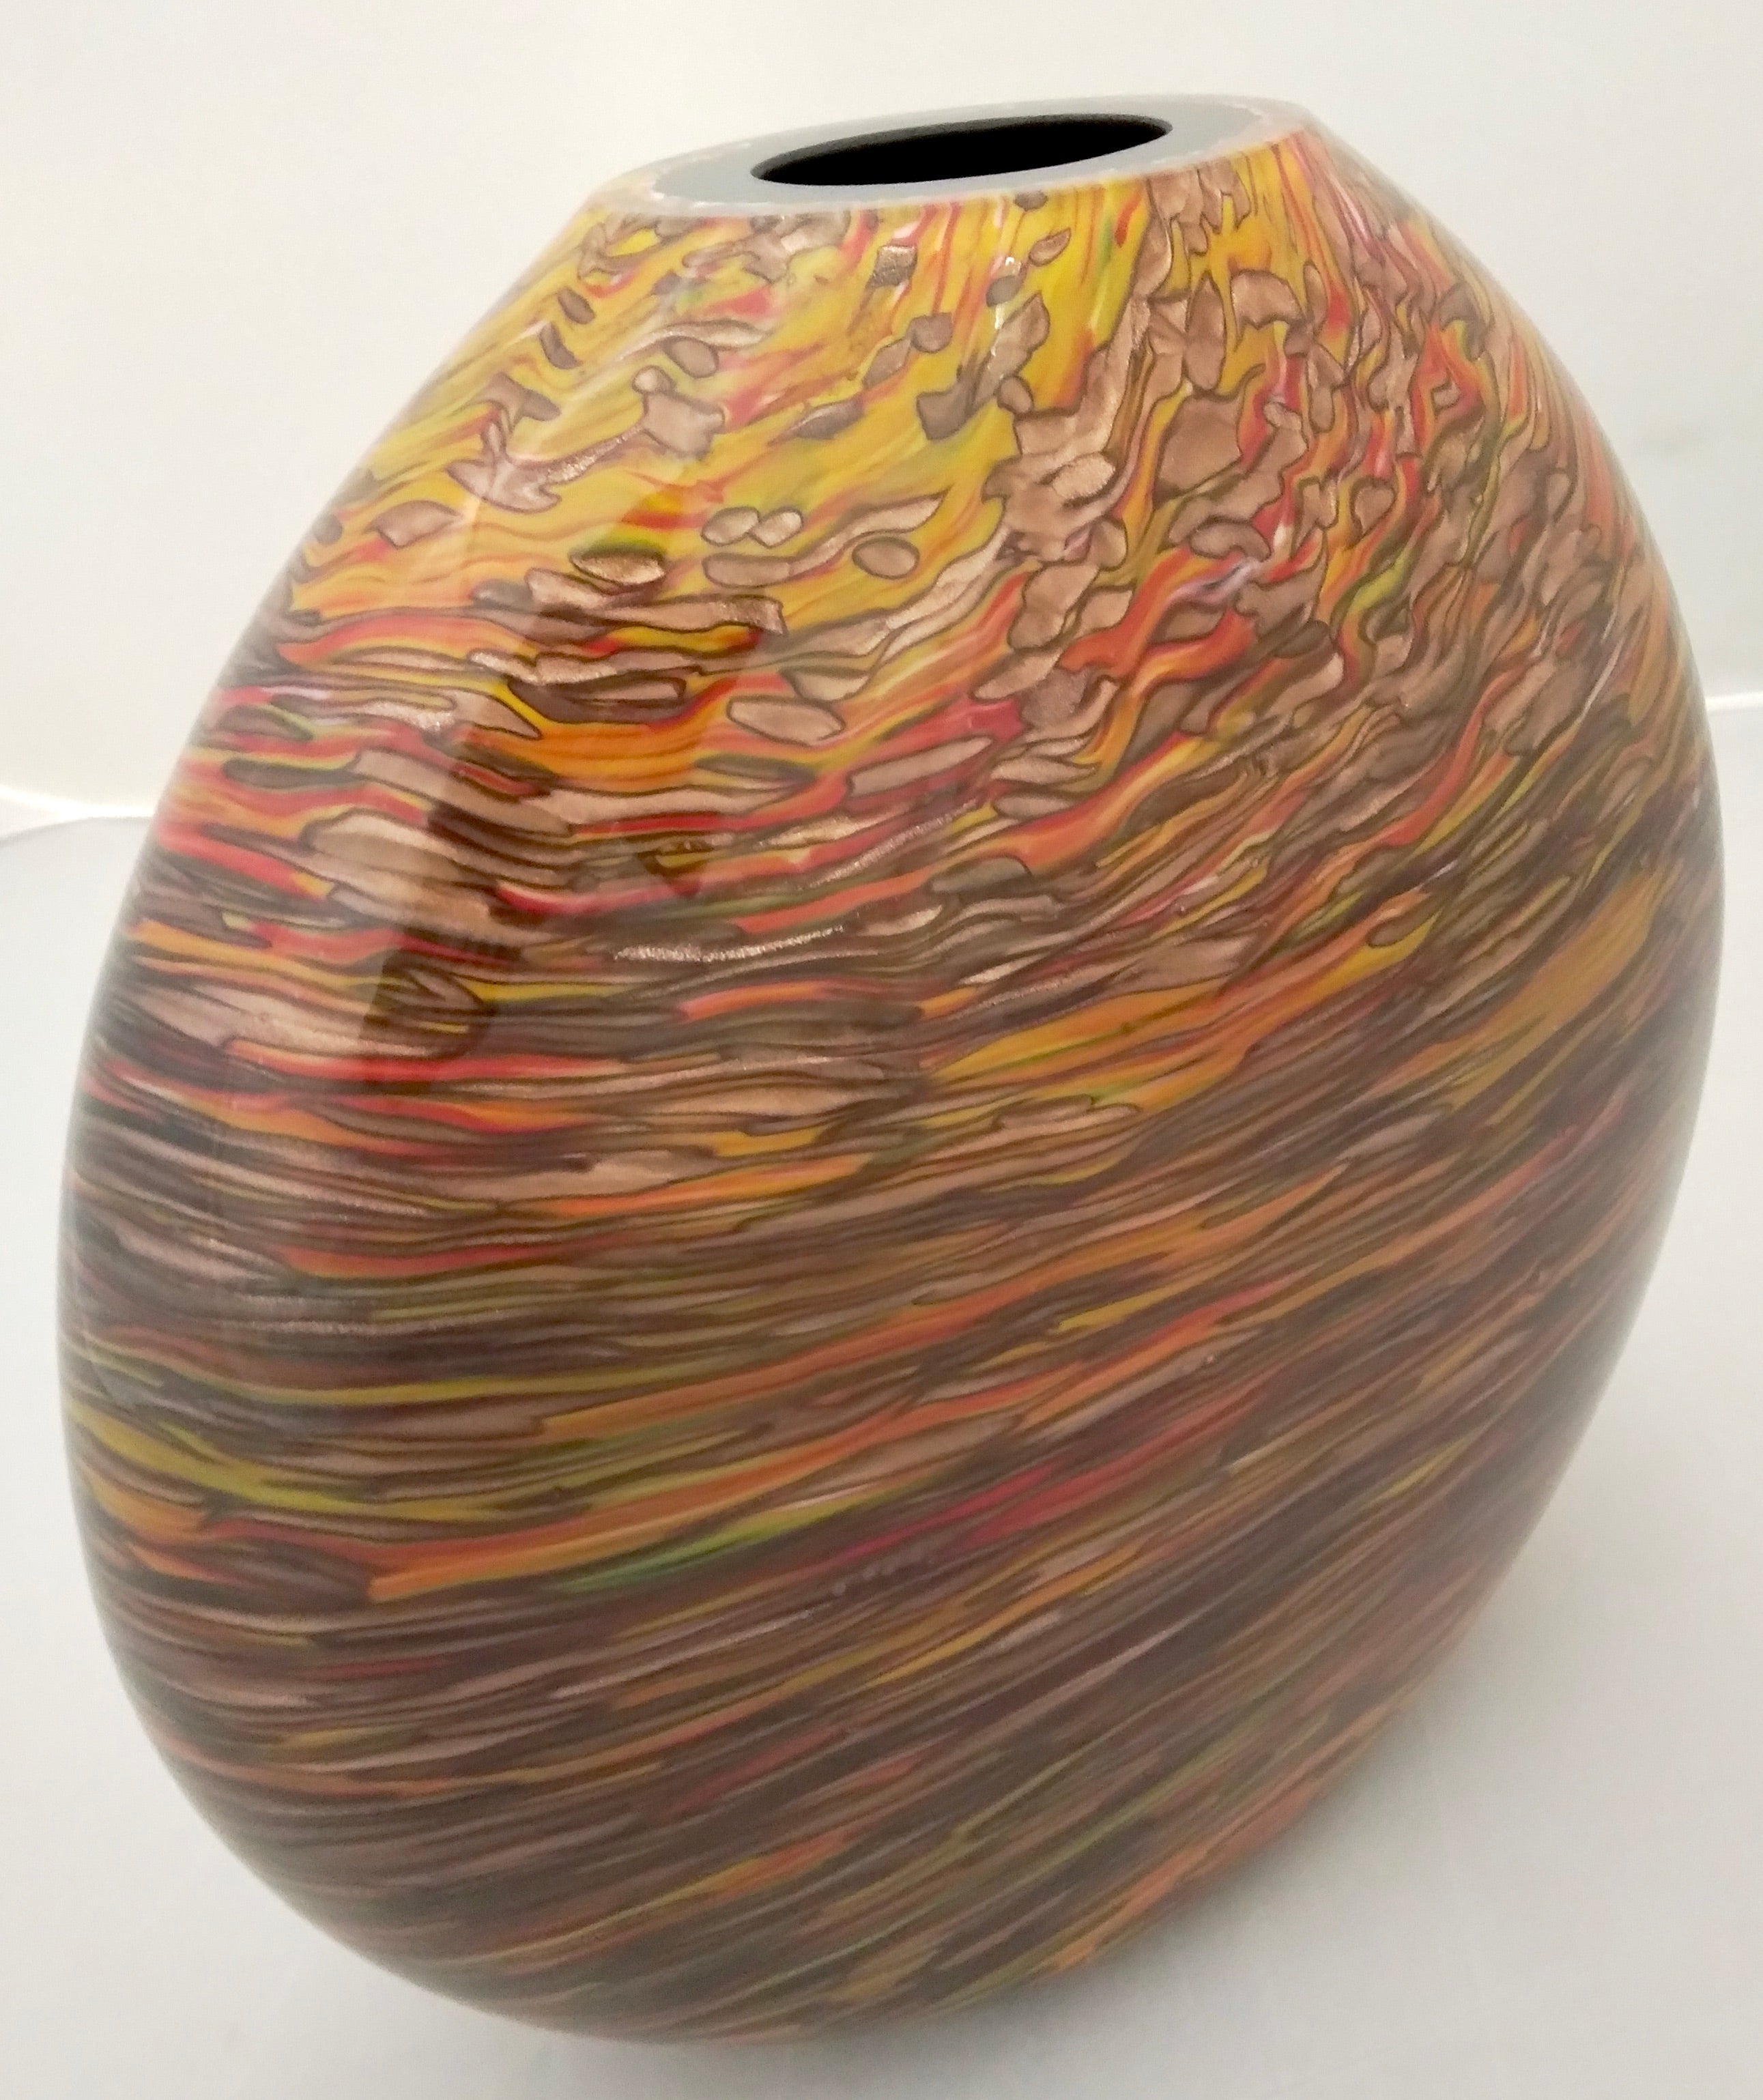 Eine auffallende elliptische ovale Vase, kostbare Kunstwerke aus mundgeblasenem massivem schwarzem Murano-Glas, gearbeitet wie ein modernes Gemälde mit einem raffinierten umfangreichen organischen feurigen Dekor aus überlagertem länglichem